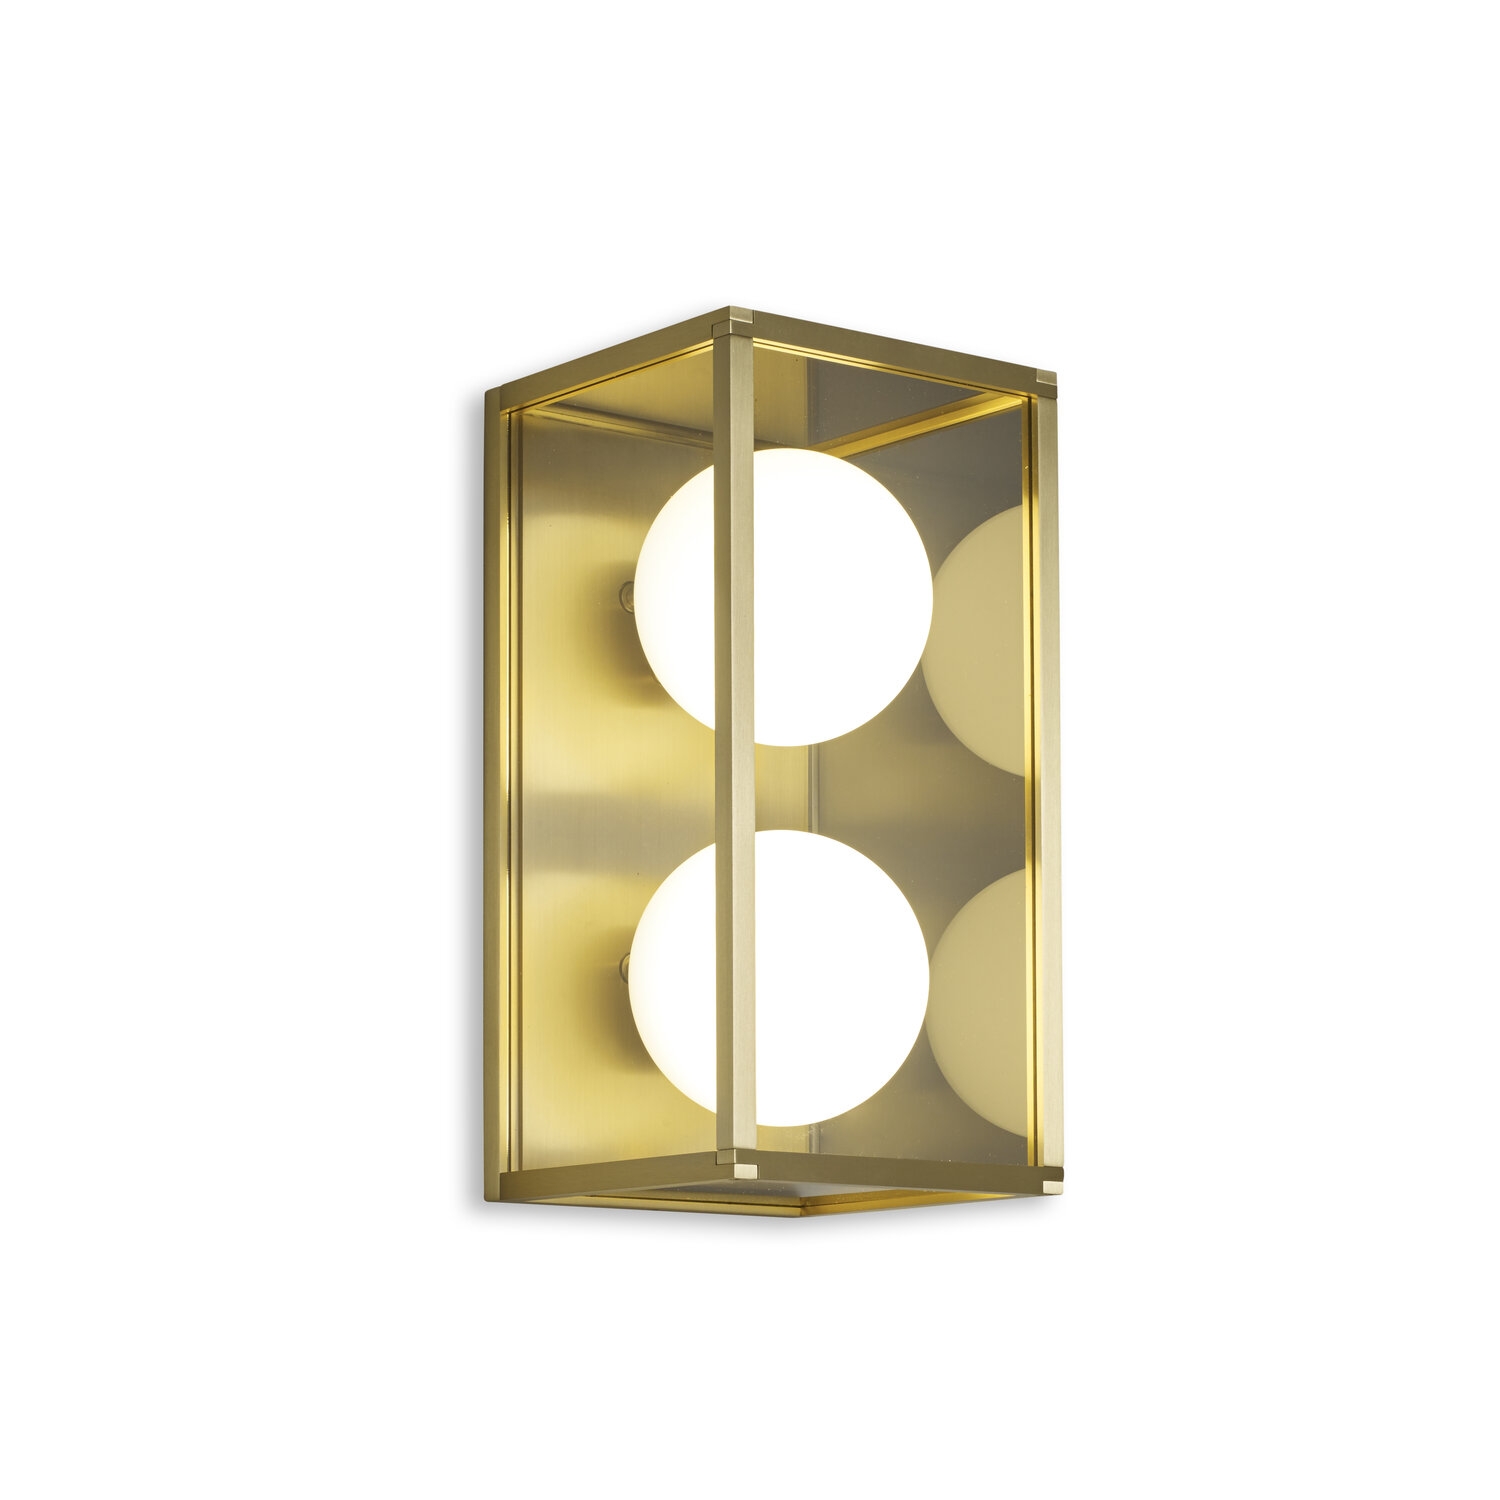 J Adams & Co – Pearl 2 – Wall Light Fixture – Brass Colour – Brass Material